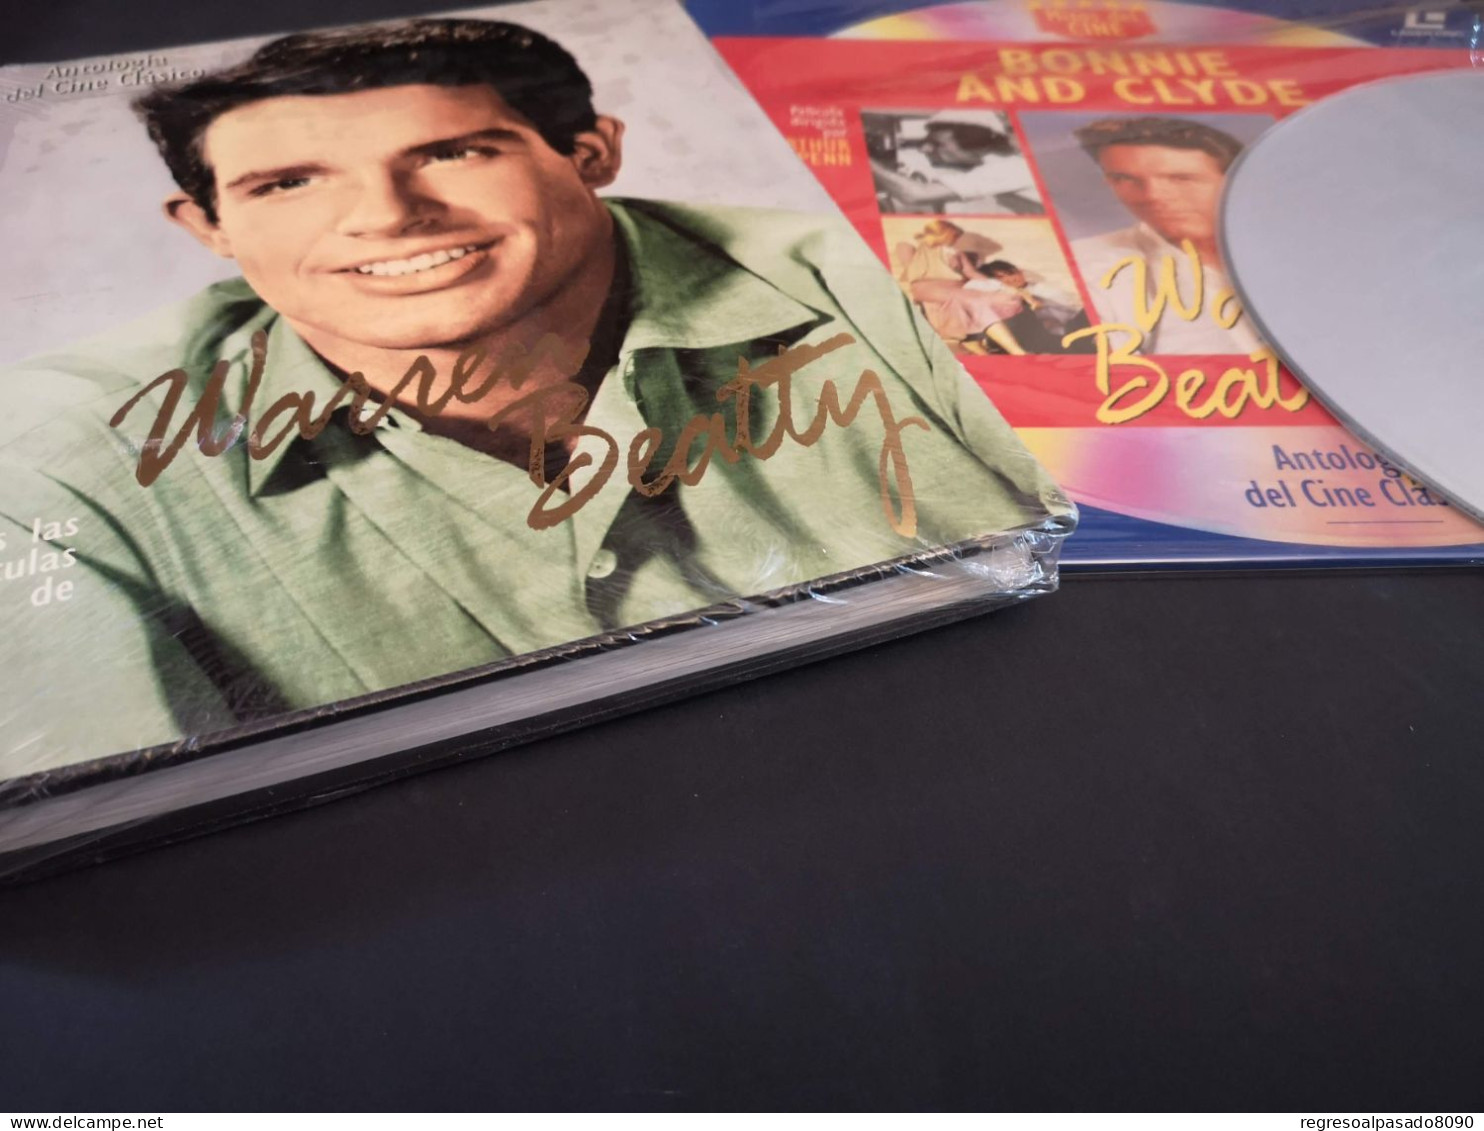 Warren Beatty Libro Y Película Laser Disc Laserdisc Bonnie And Clyde. Colección Mitos Del Cine Planeta Años 90 - Classic